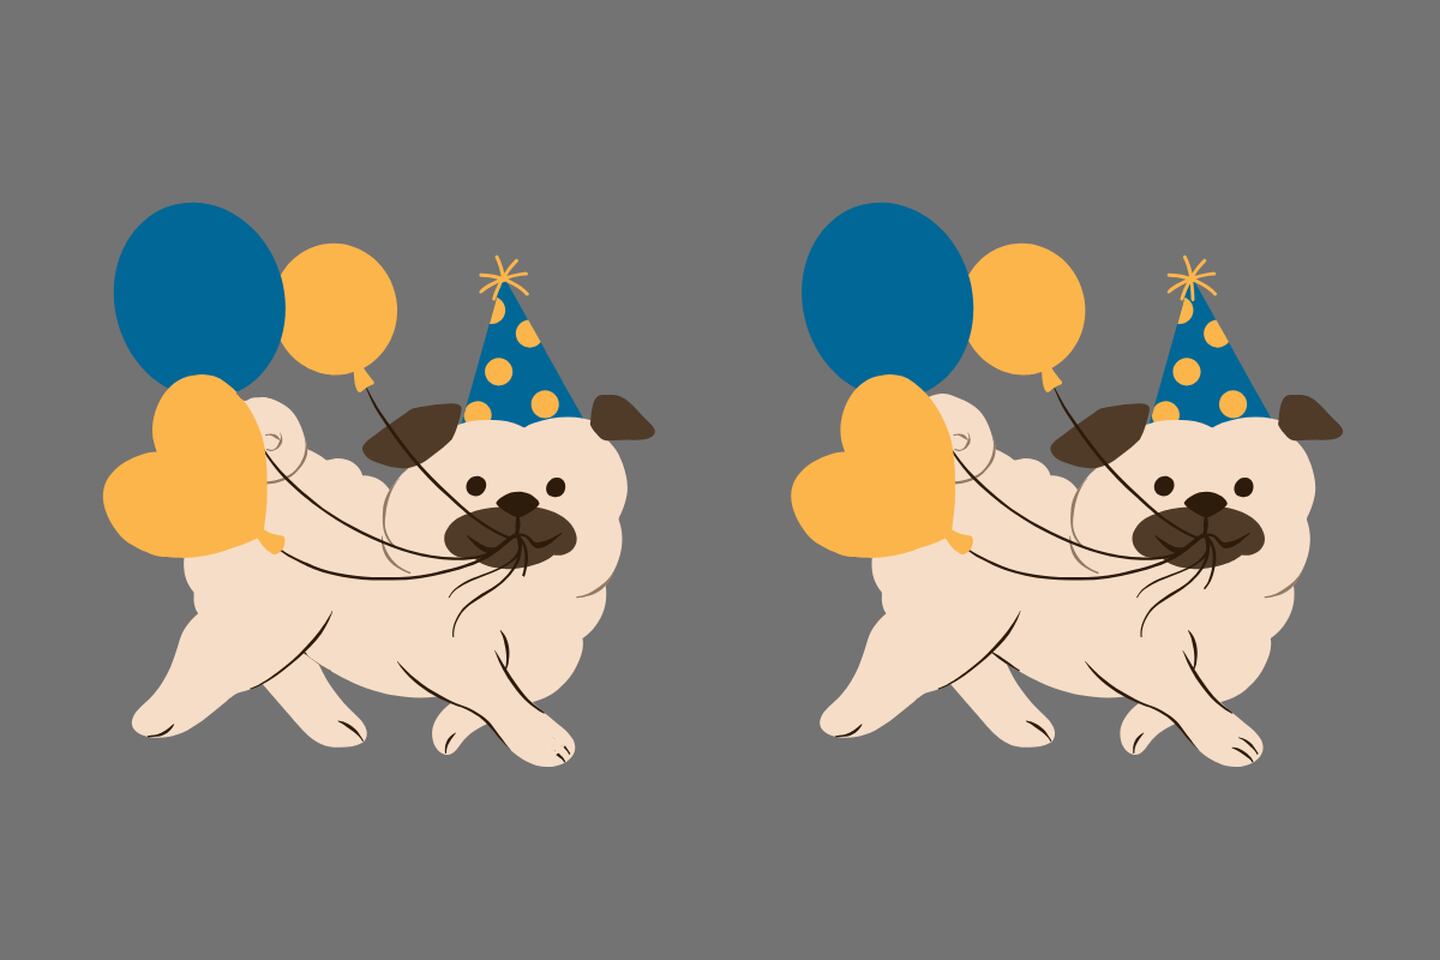 En este test visual hay cinco diferencias entre los dos perros que sostienen globos.